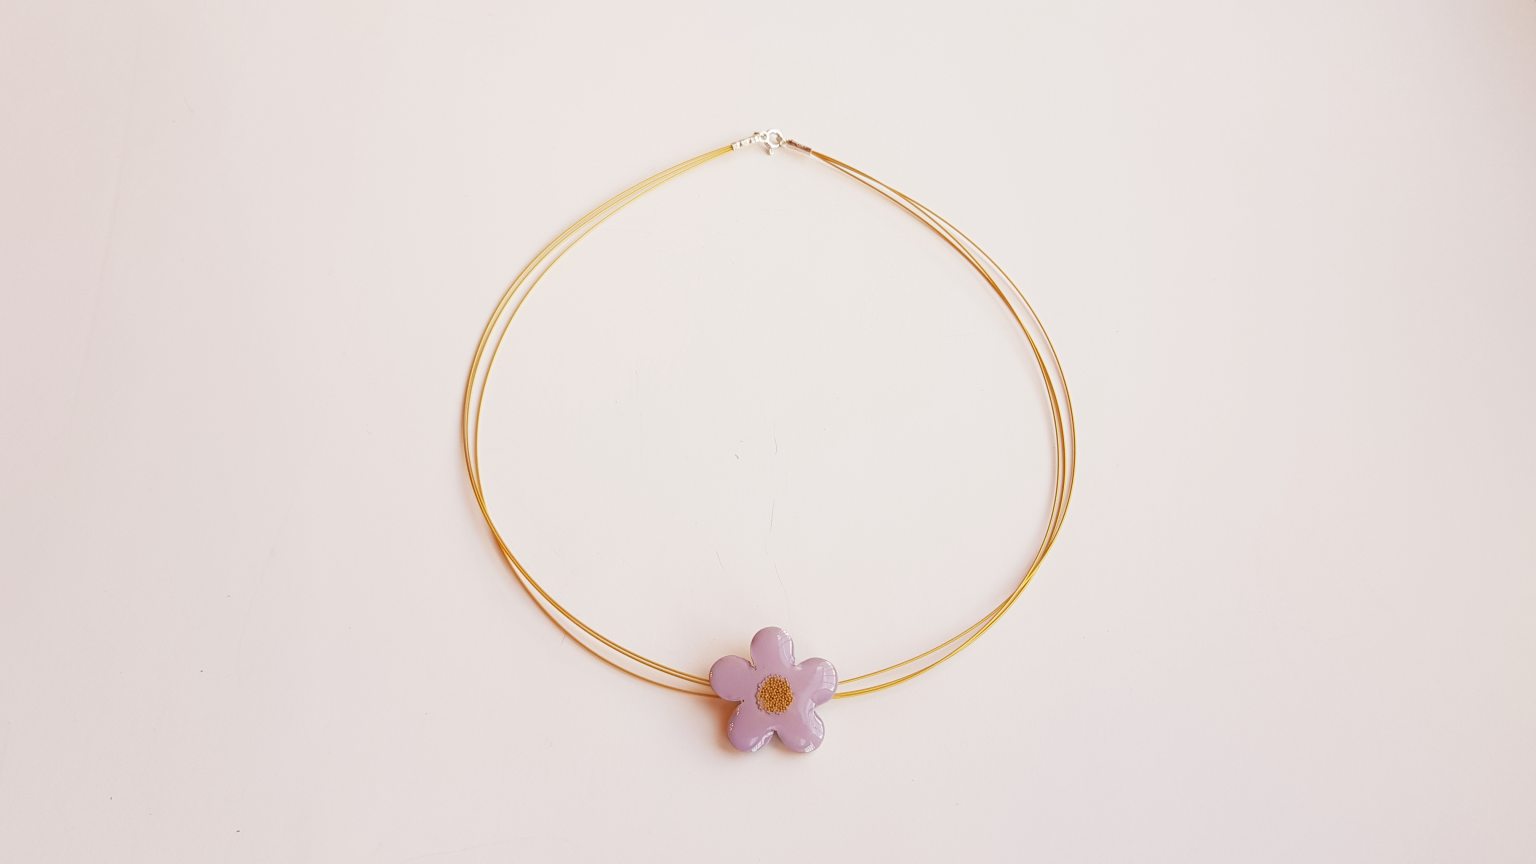 Νecklace "Lilac daisy flower"